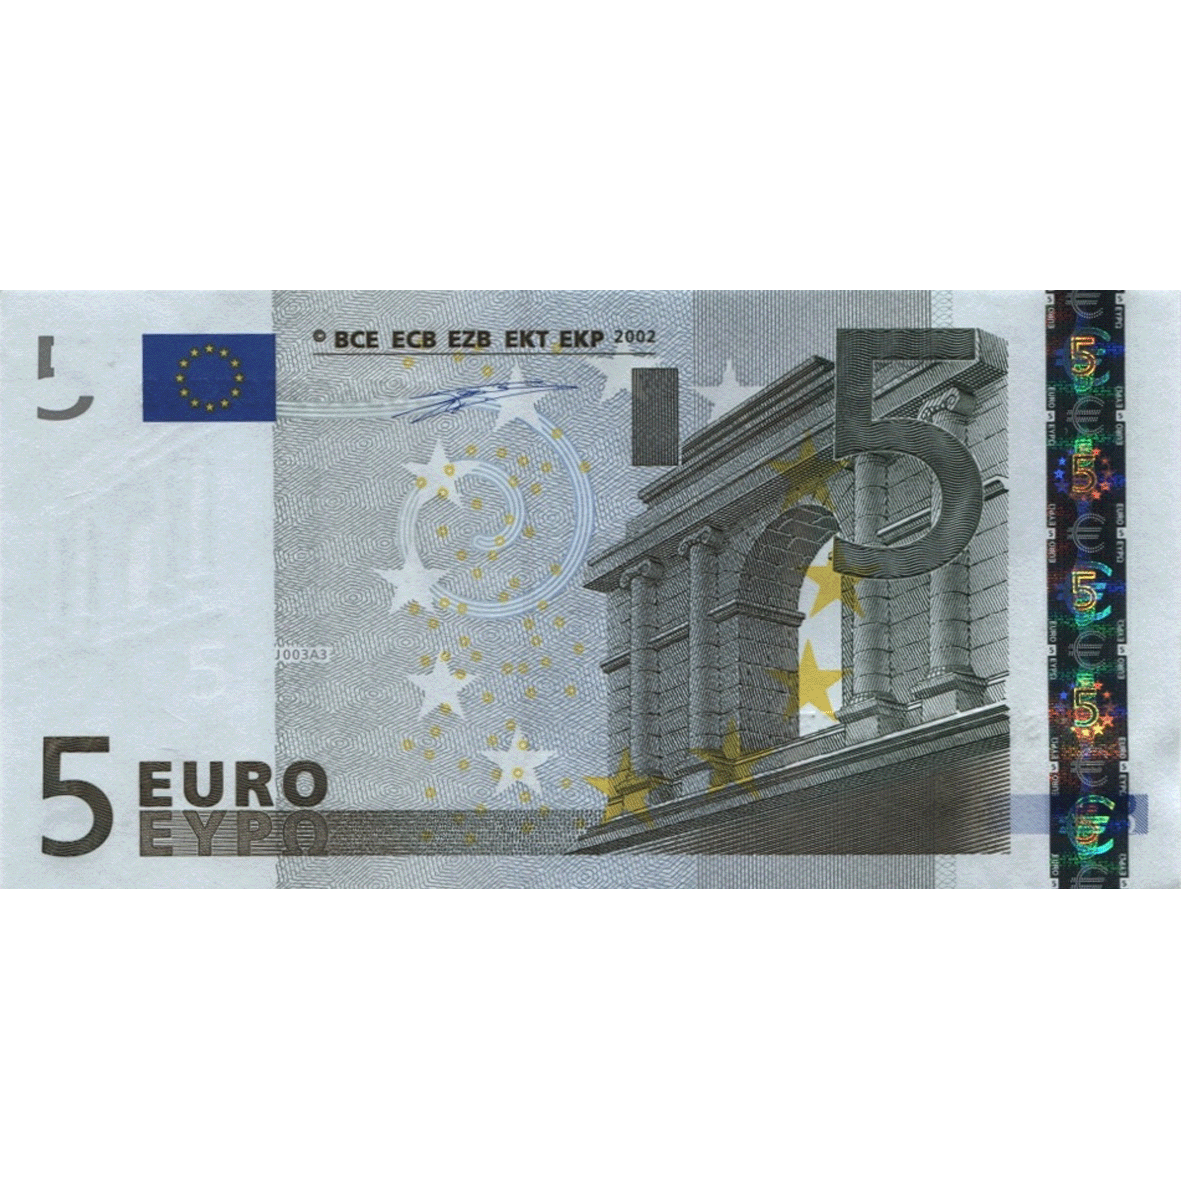 European Union, 5 Euro 2002 (obverse)